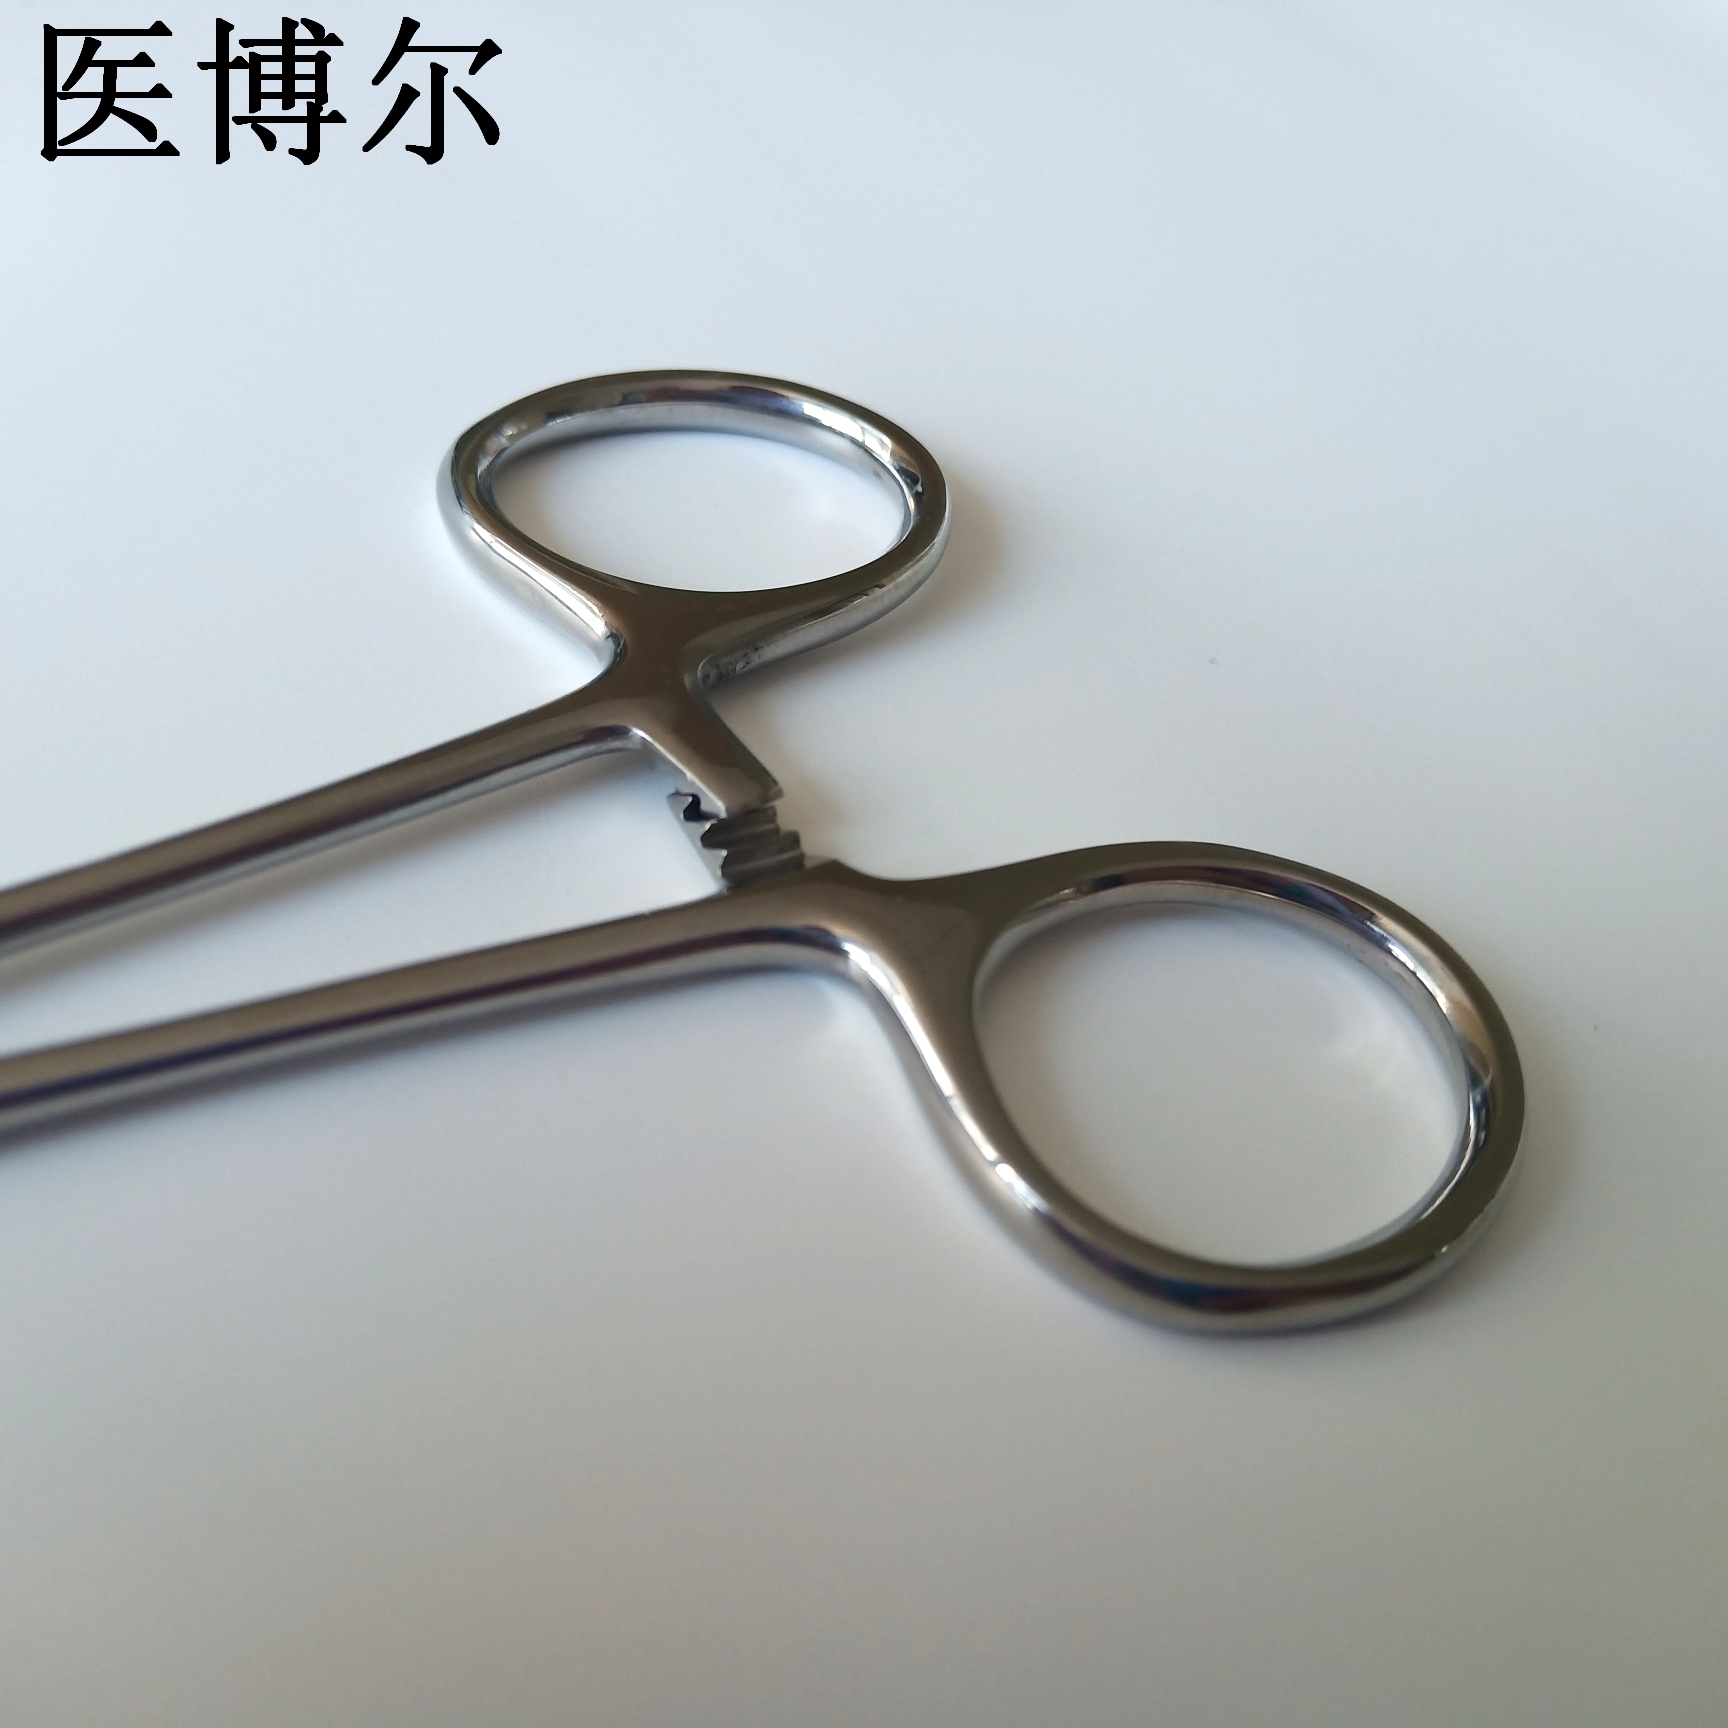 12.5cm持针钳 (4)_看图王.jpg